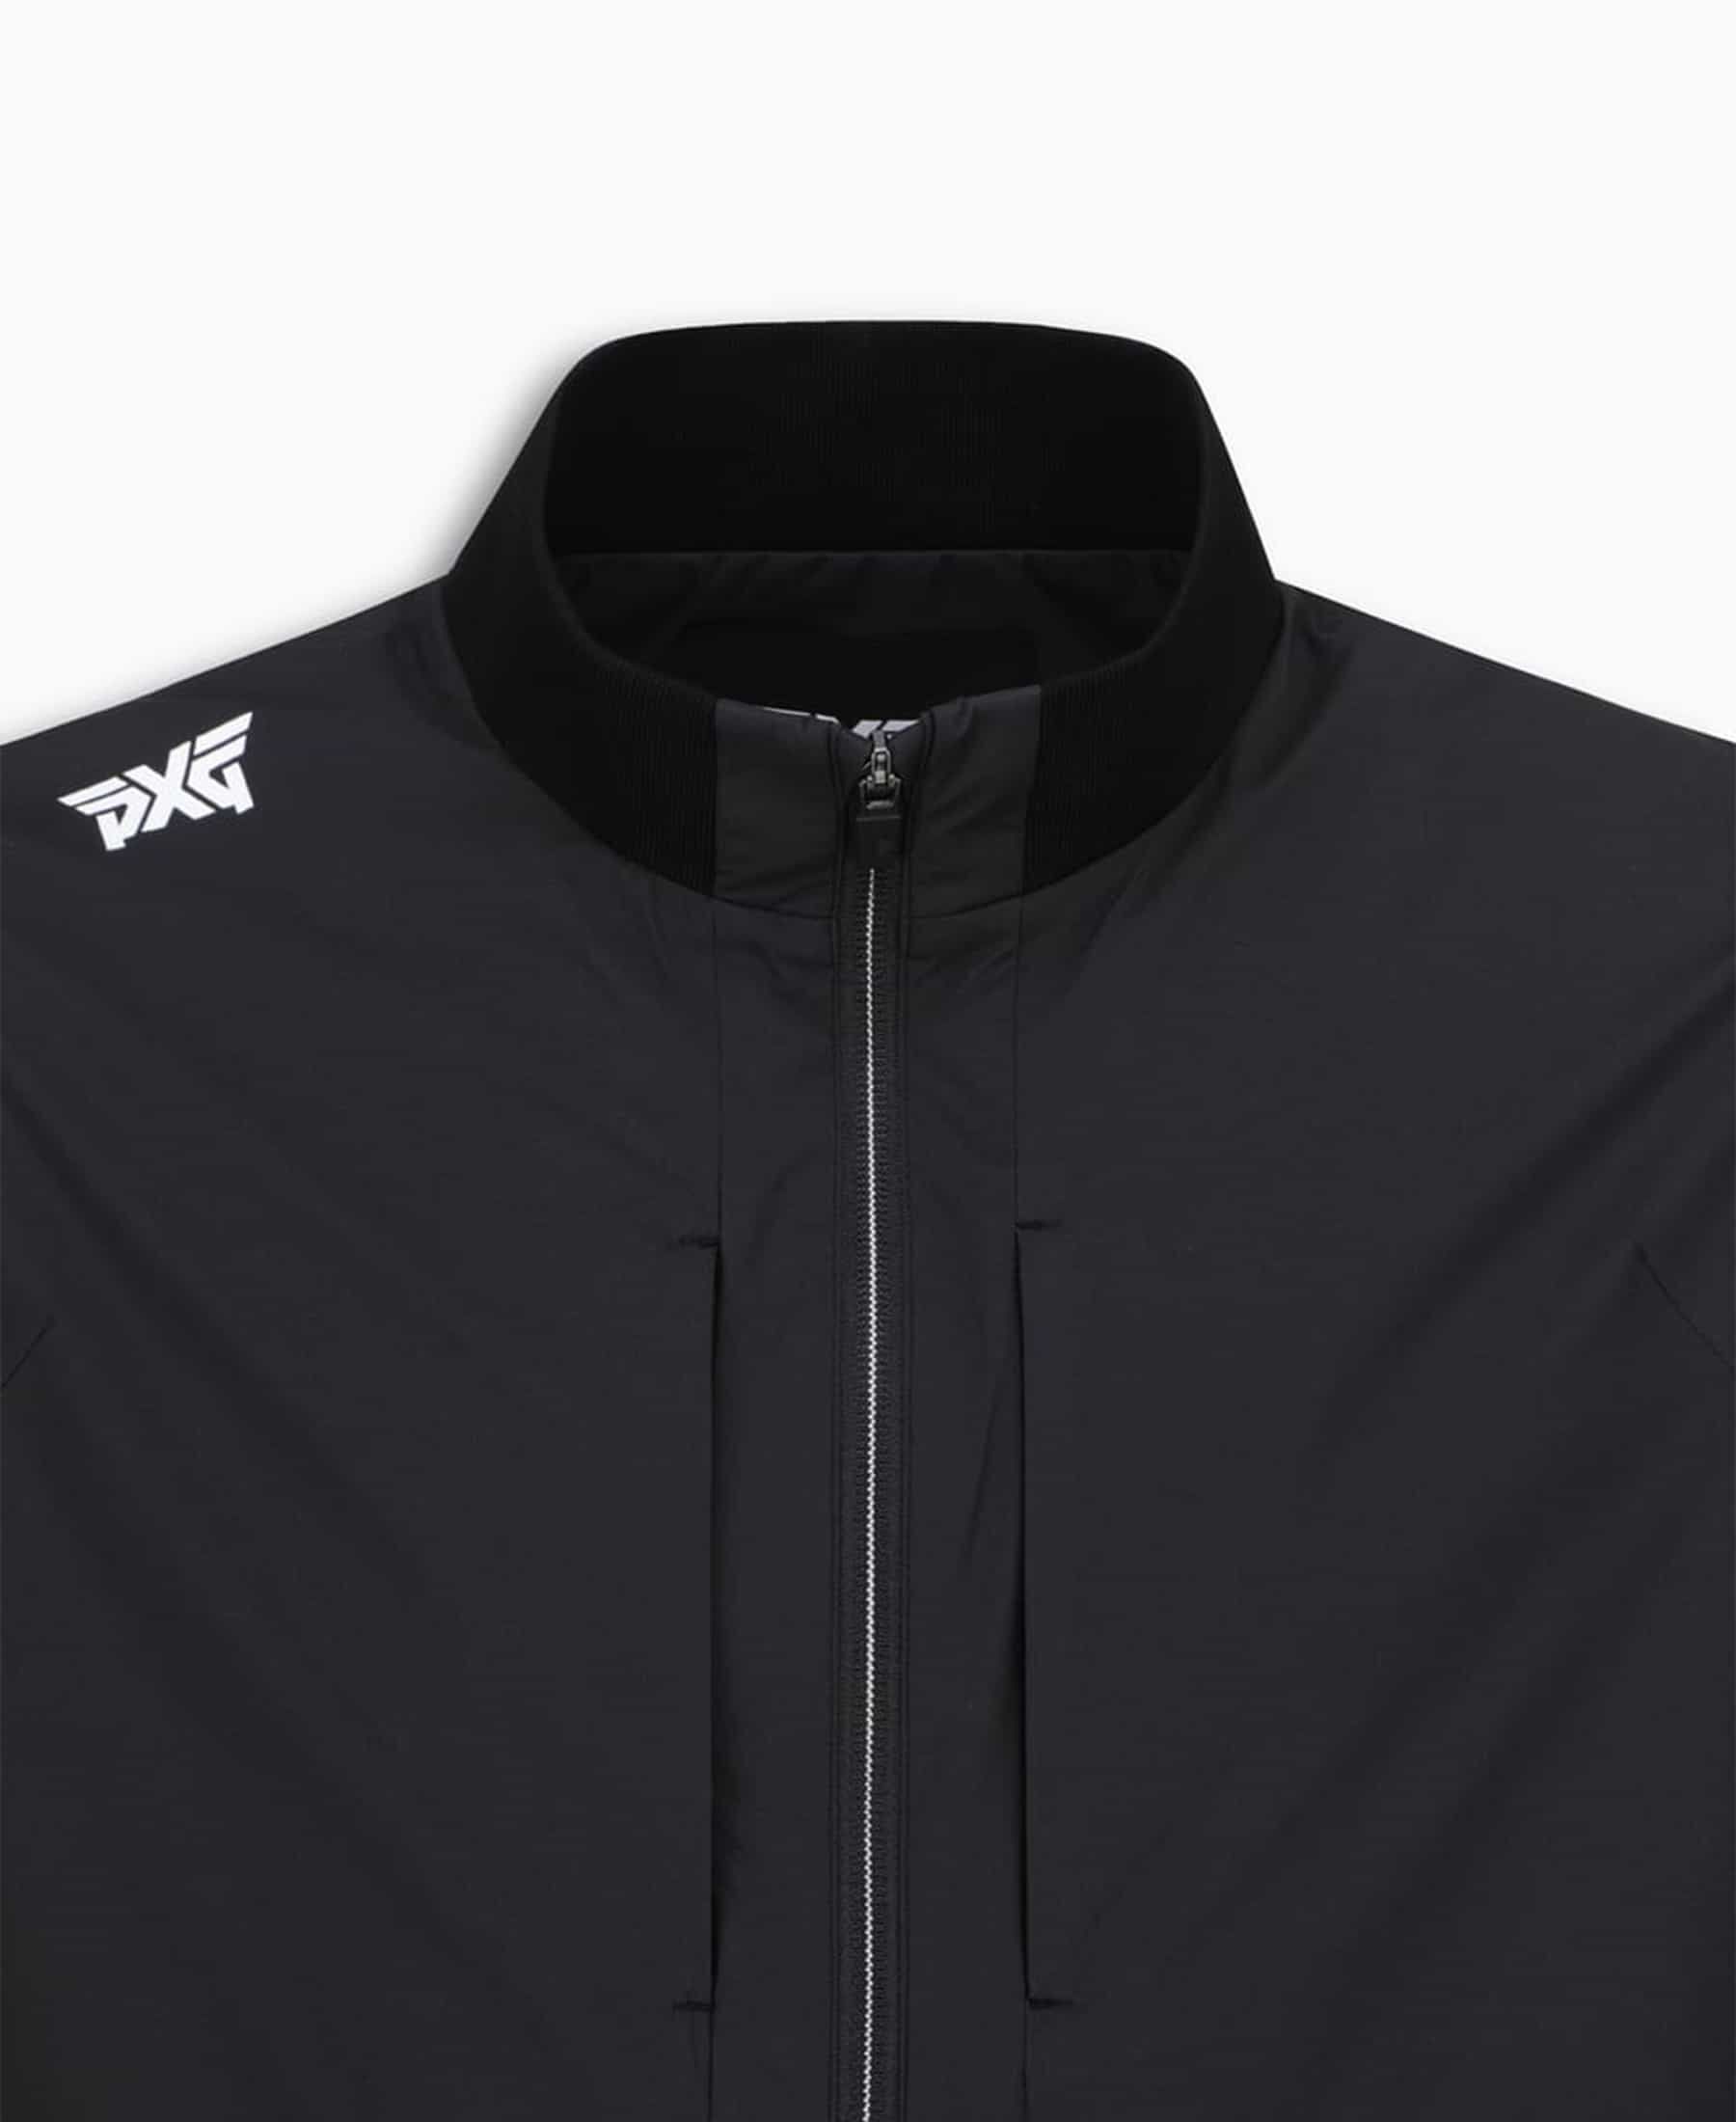 Shop Men's Golf ジャケット and Coats - Online or In-Store | PXG JP